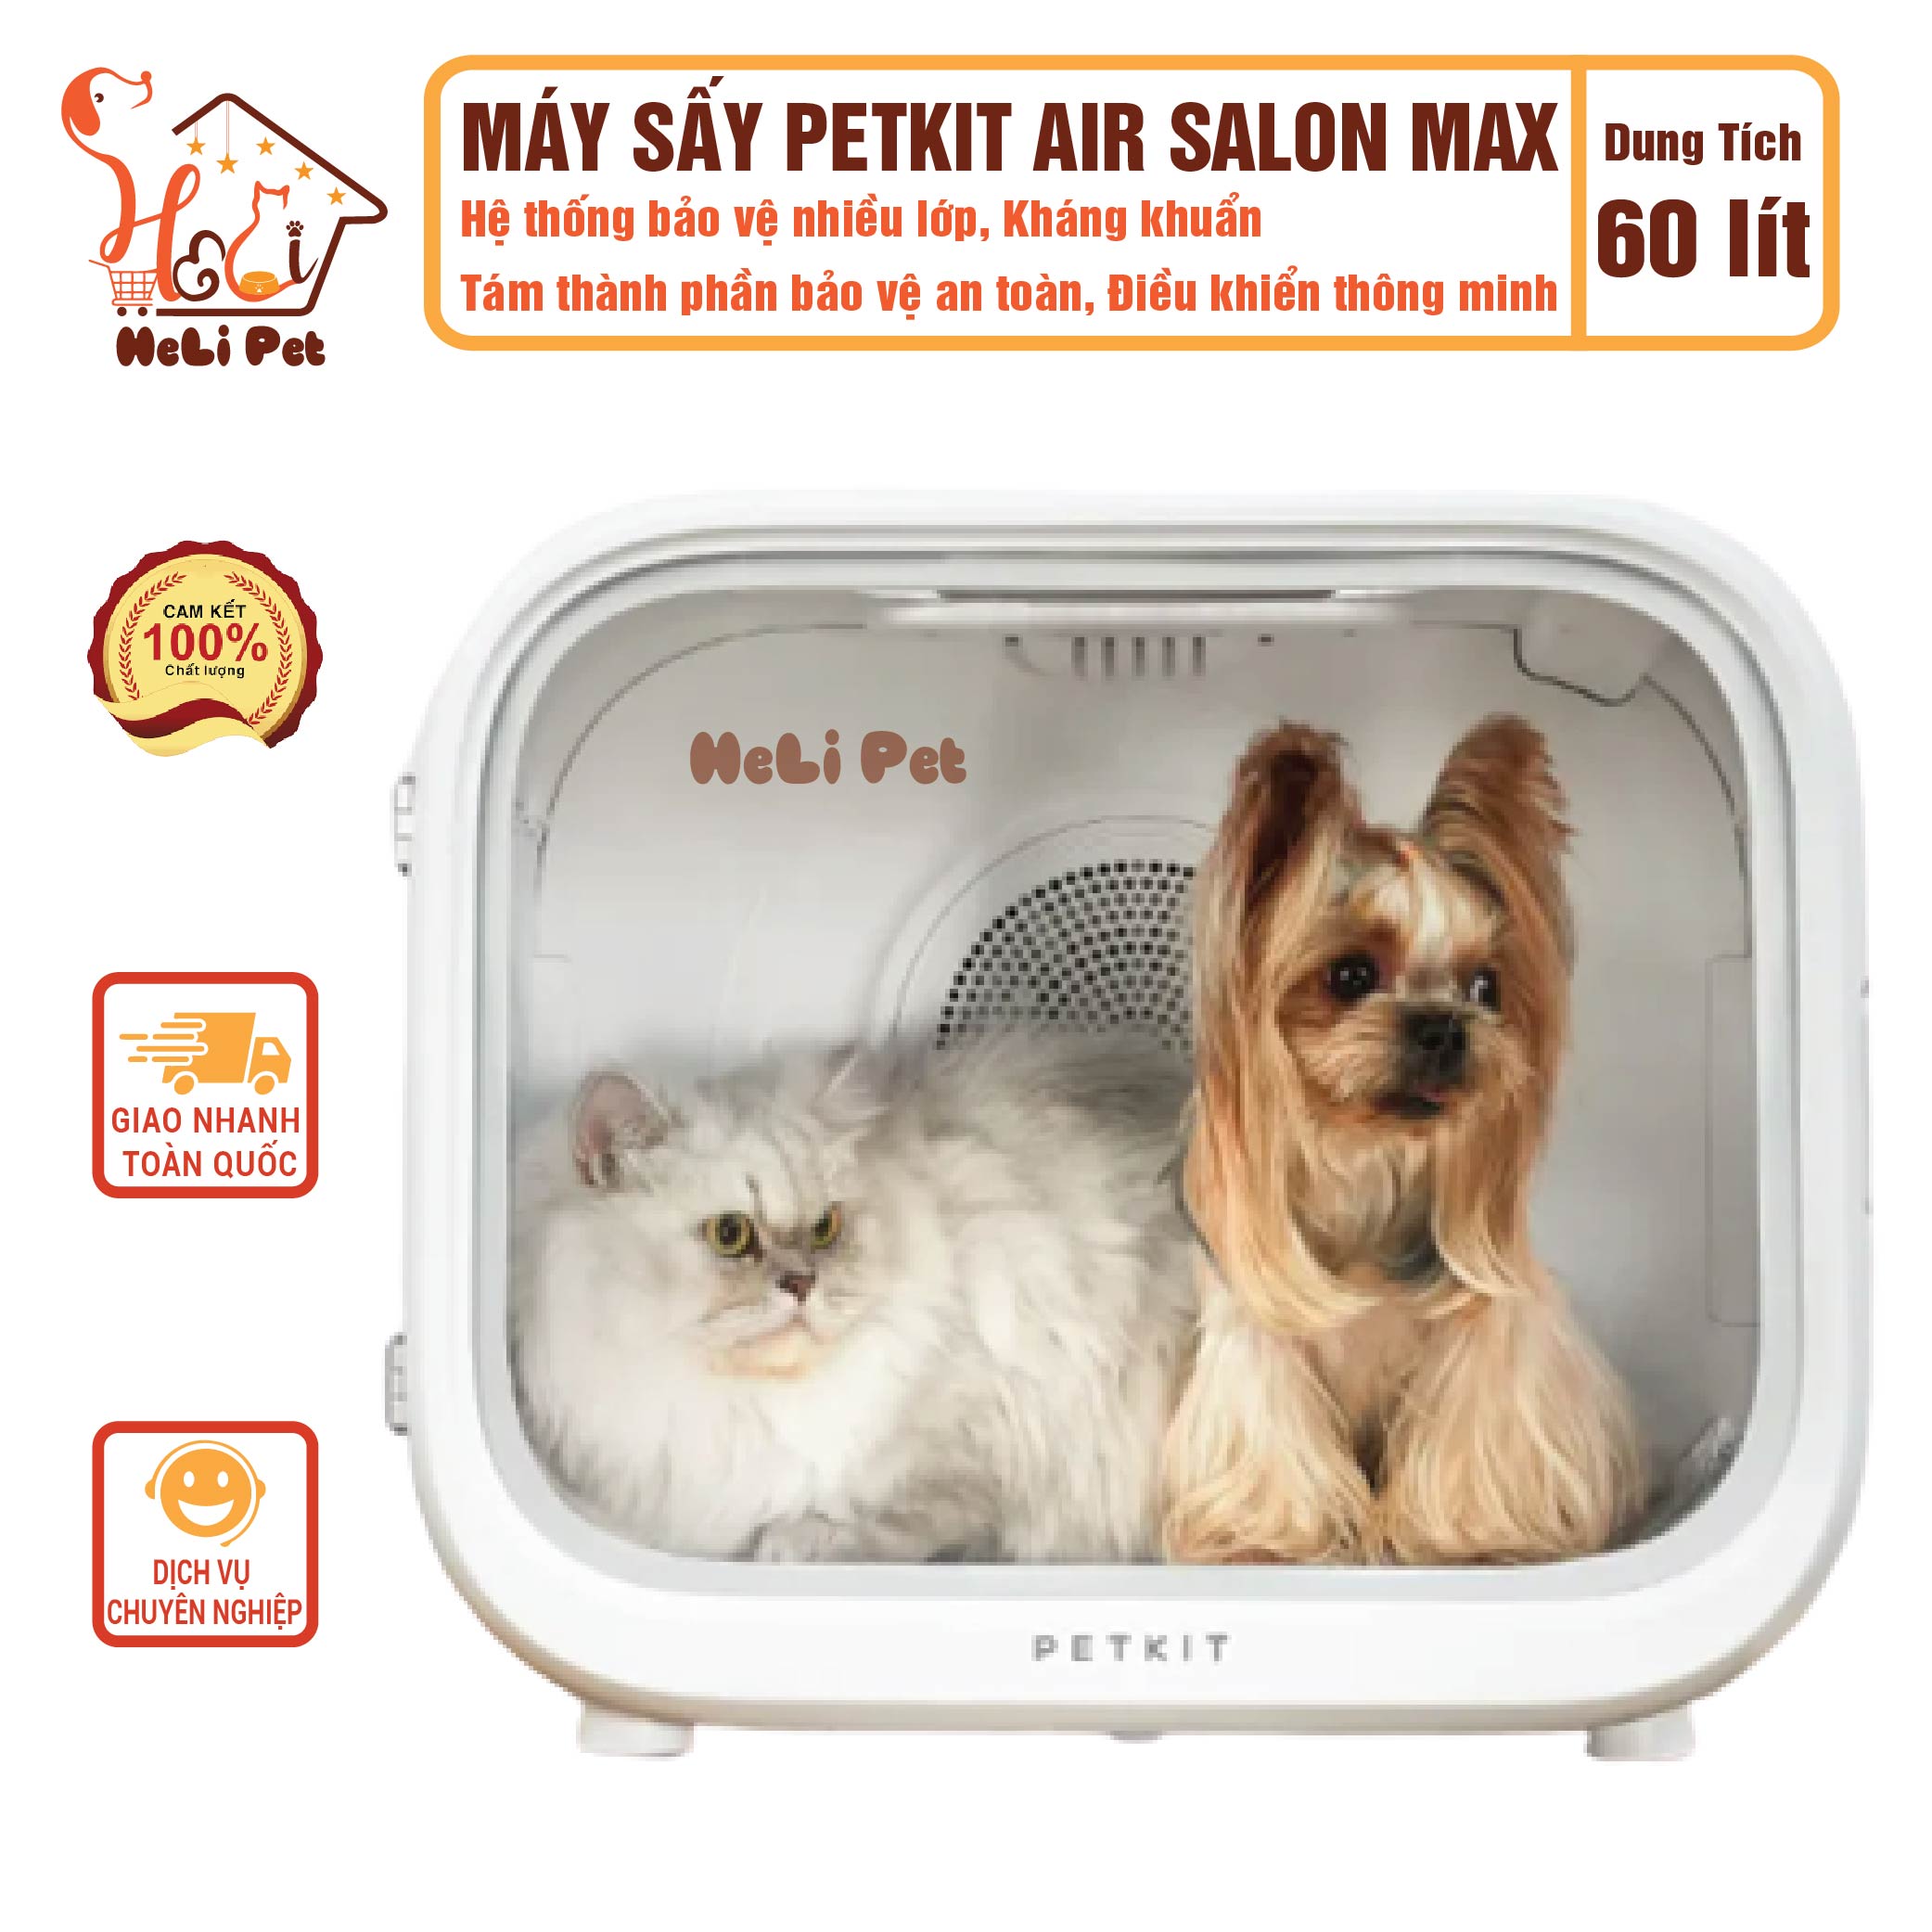 Lồng Sấy Tự Động Cho Chó Mèo, Máy Sấy Cho Chó Mèo Petkit Air Salon Max- HeLiPet